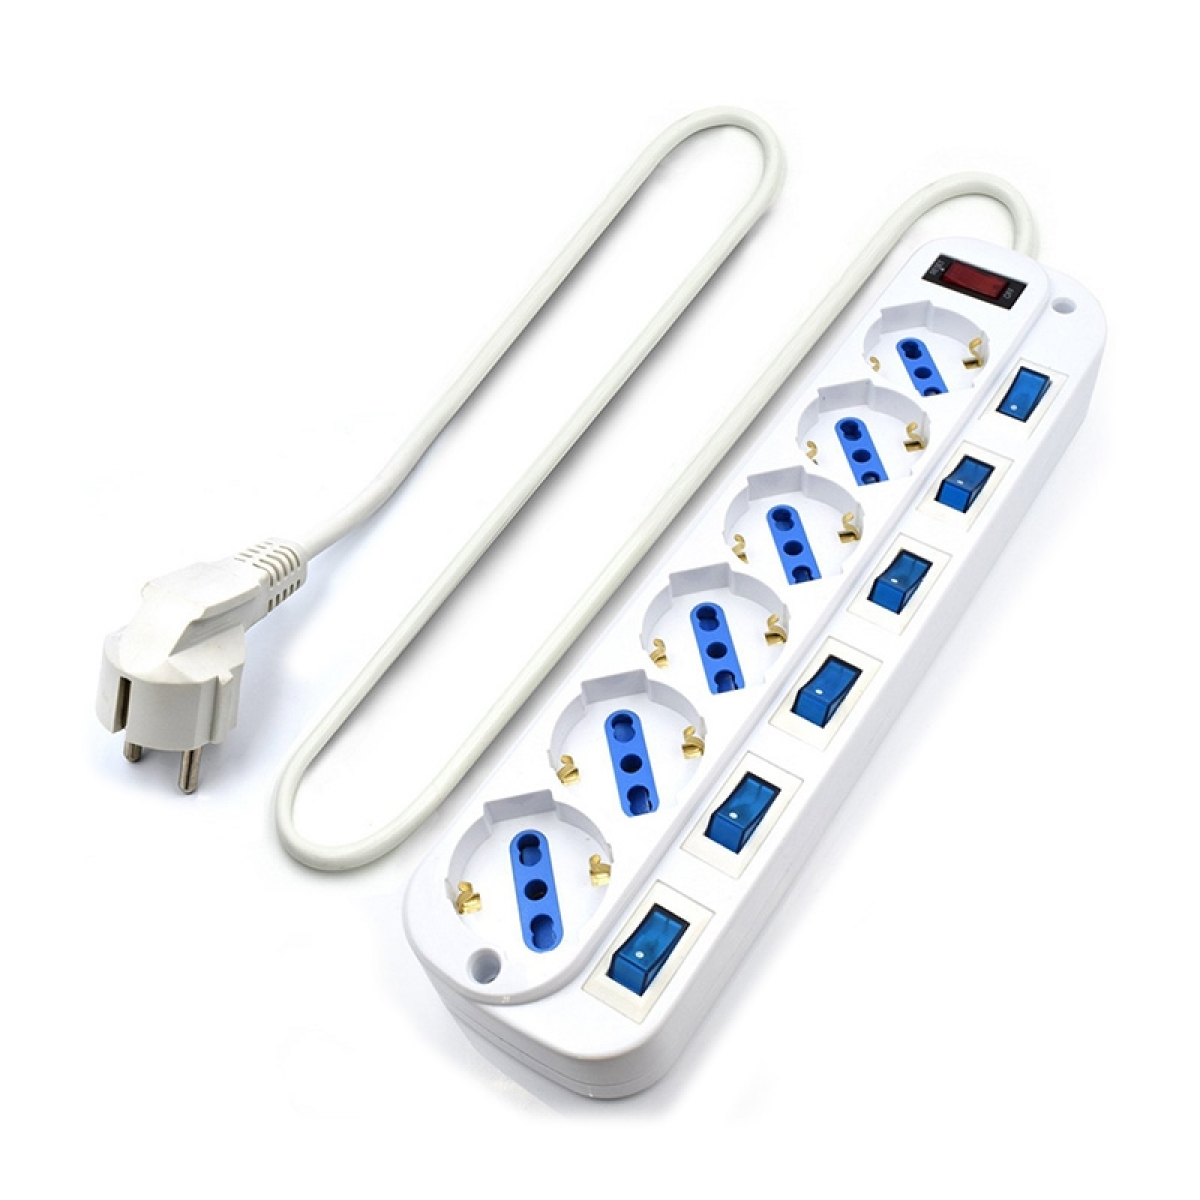 Regleta de 5 enchufes y USB con protección eléctrica Salicru SPS